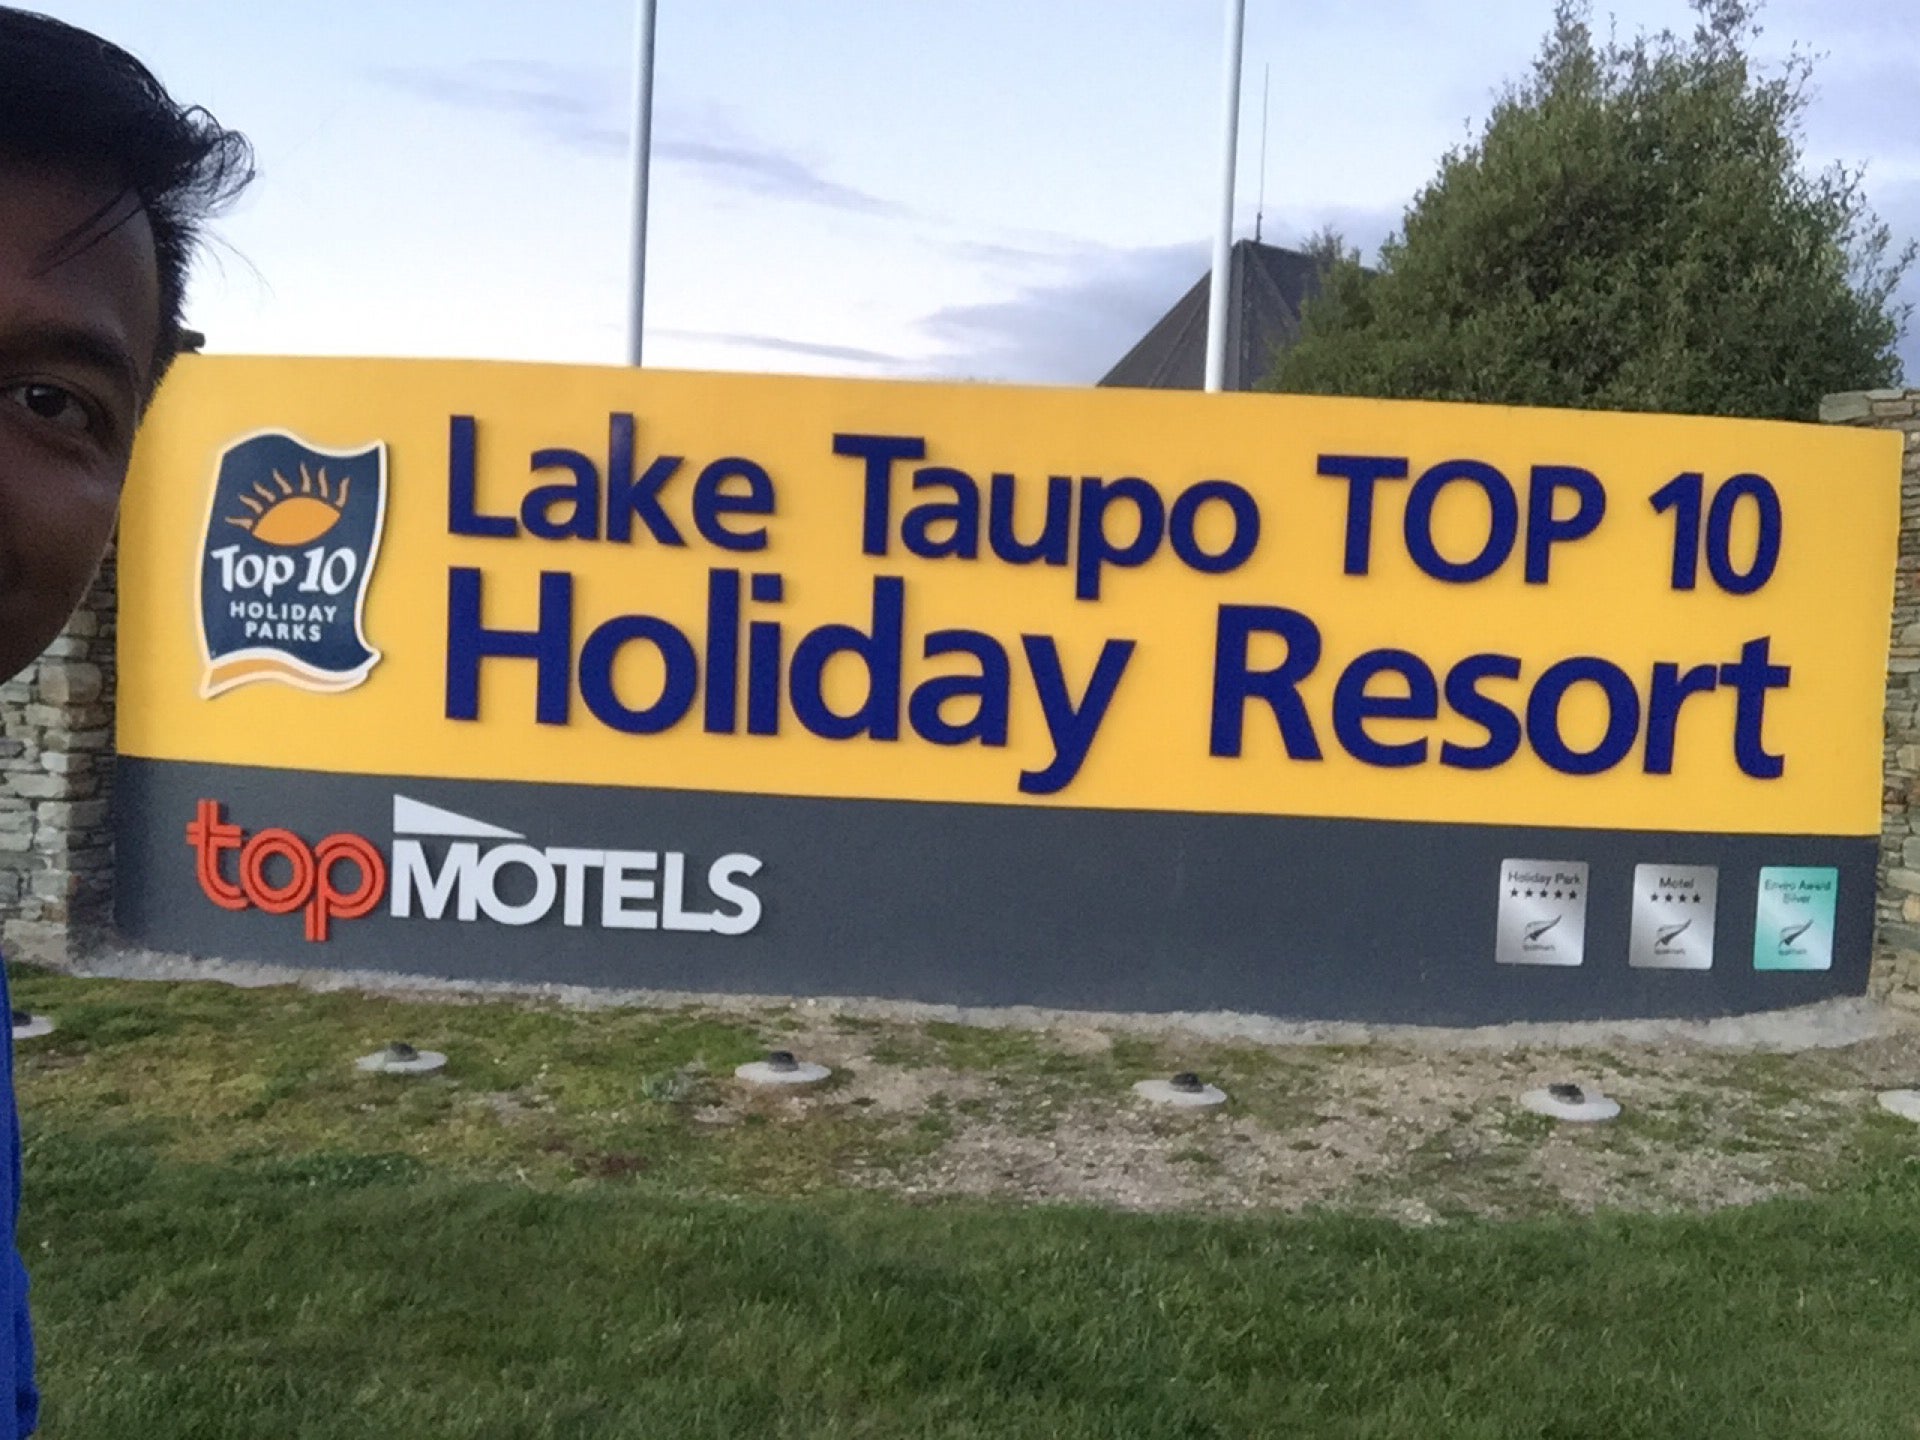 Lake Taupo TOP 10 Holiday Resort